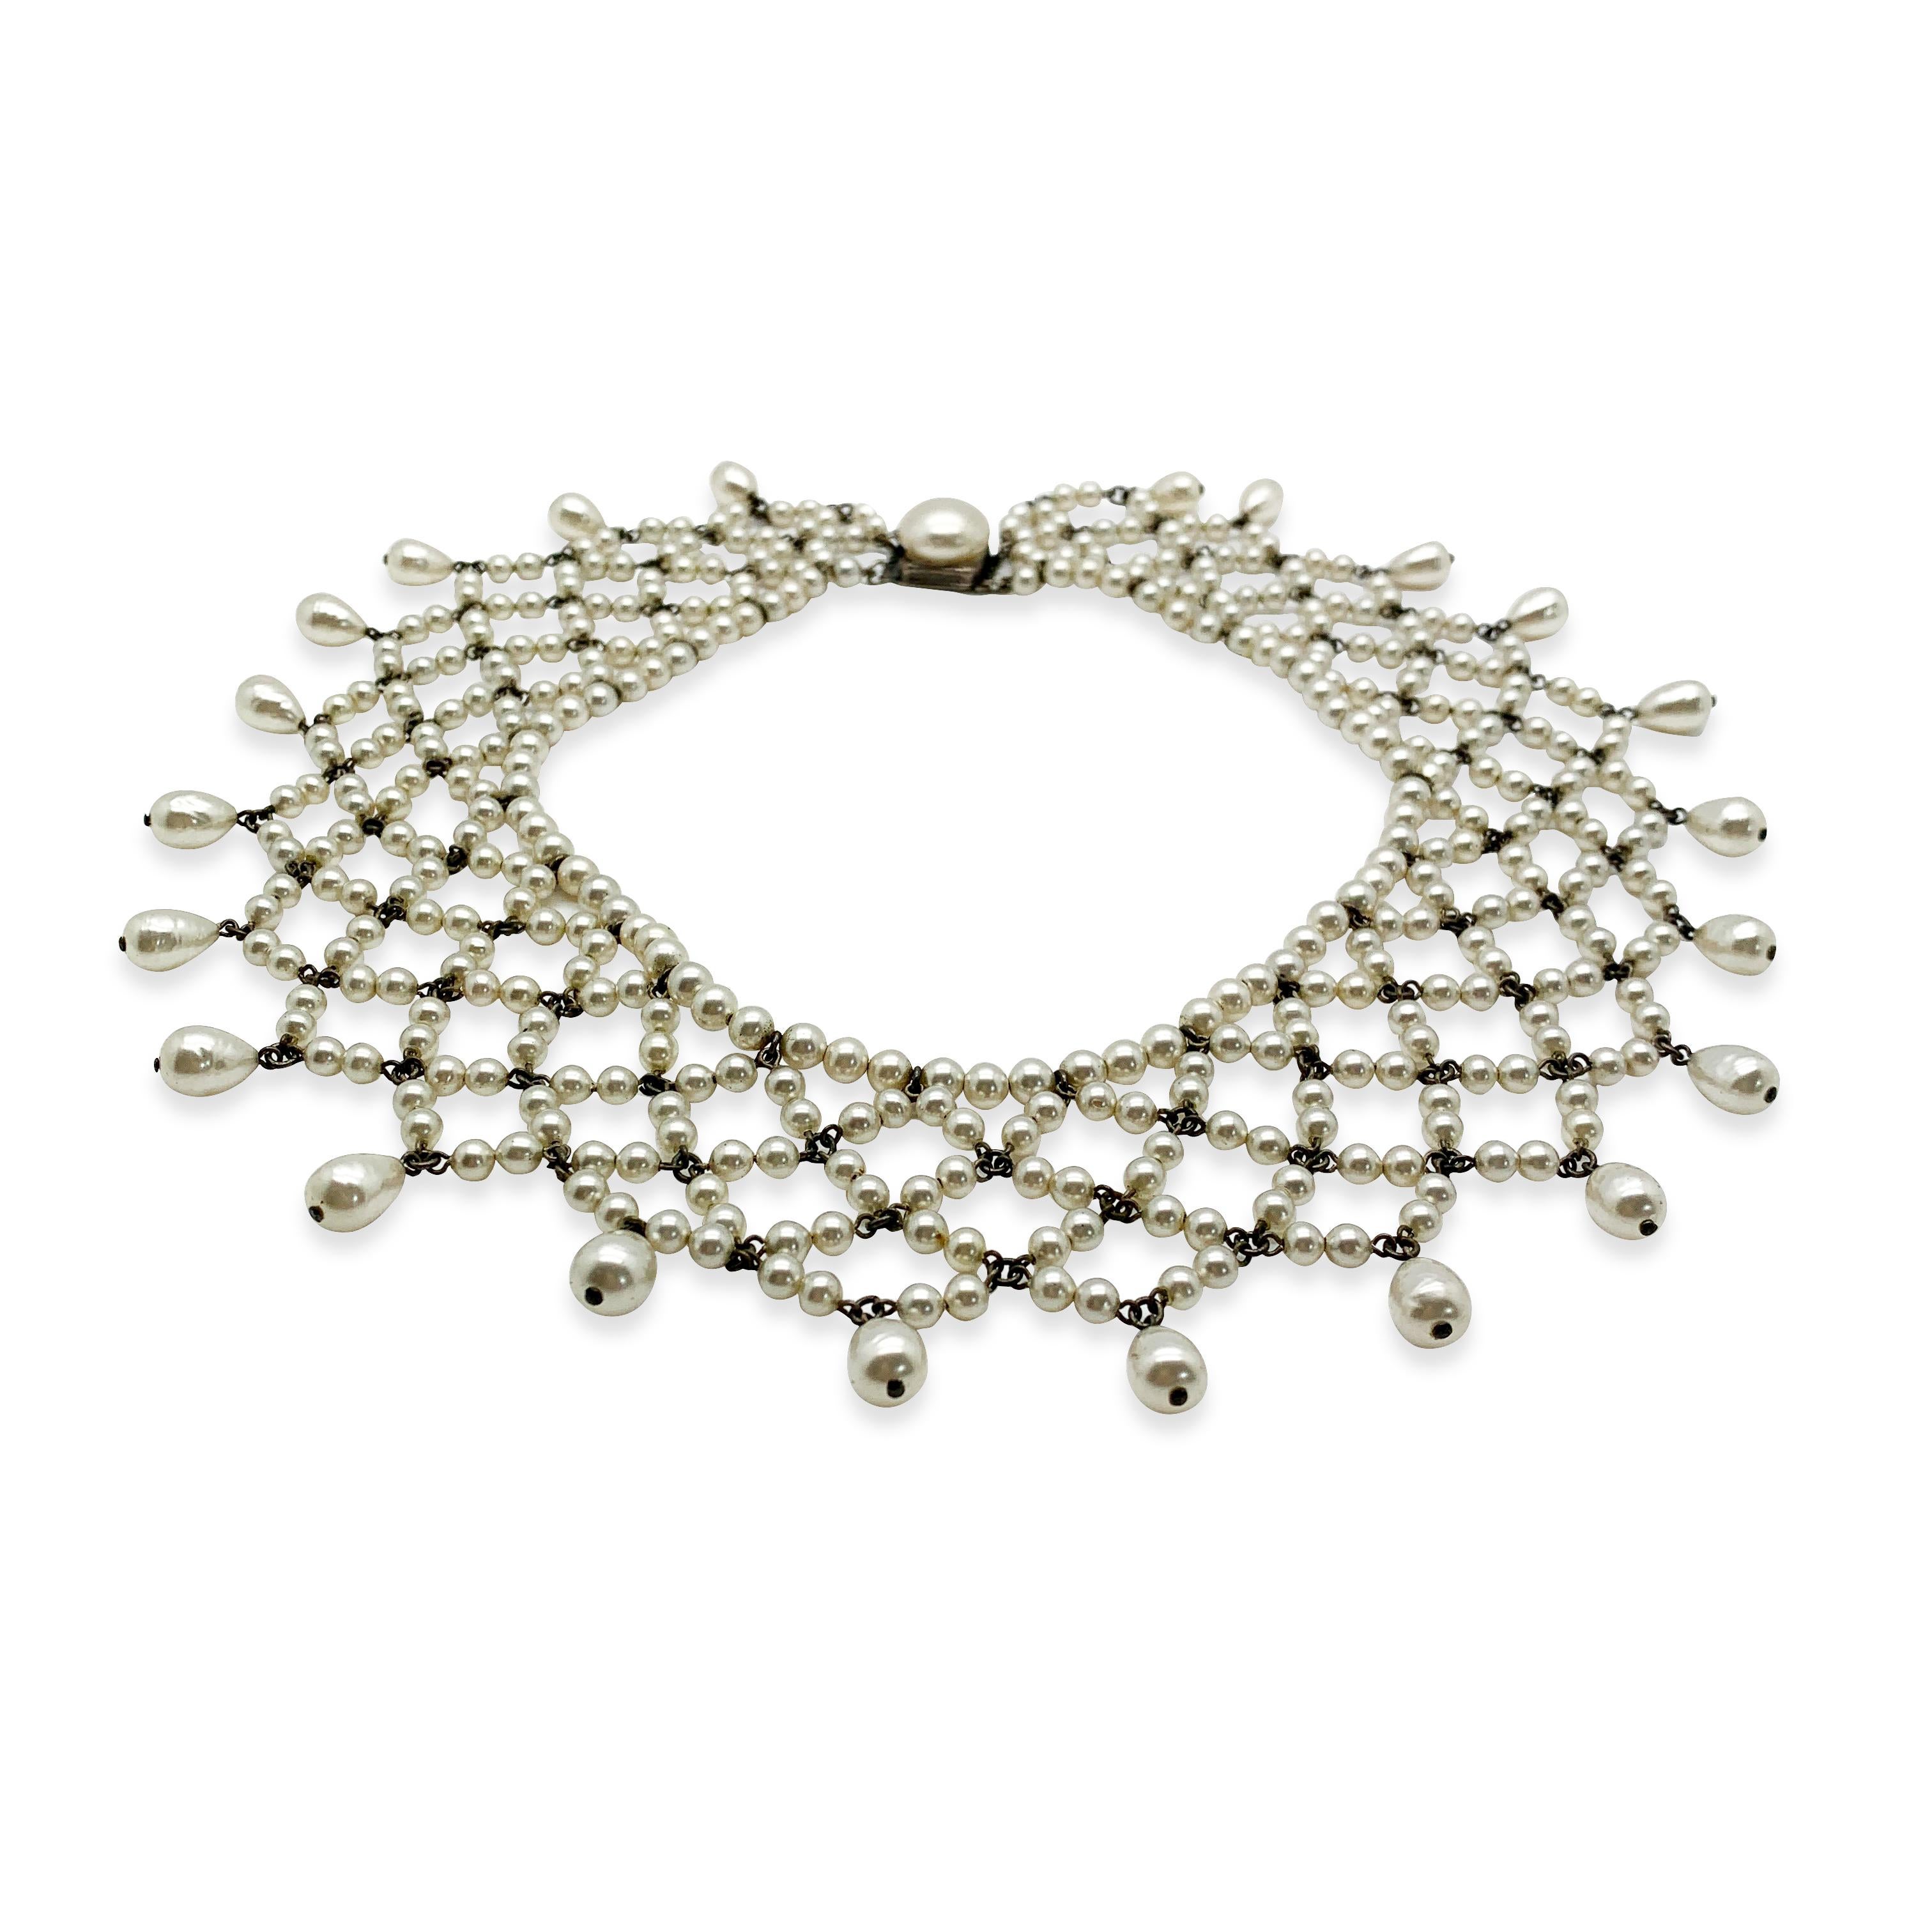 Un très beau collier Louis Rousselet vintage, intemporel, créé à Paris. Réalisé en métal argenté et perles de verre. Ce collier en dentelle est composé de magnifiques perles de verre lustrées, très probablement coulées, y compris des perles rondes